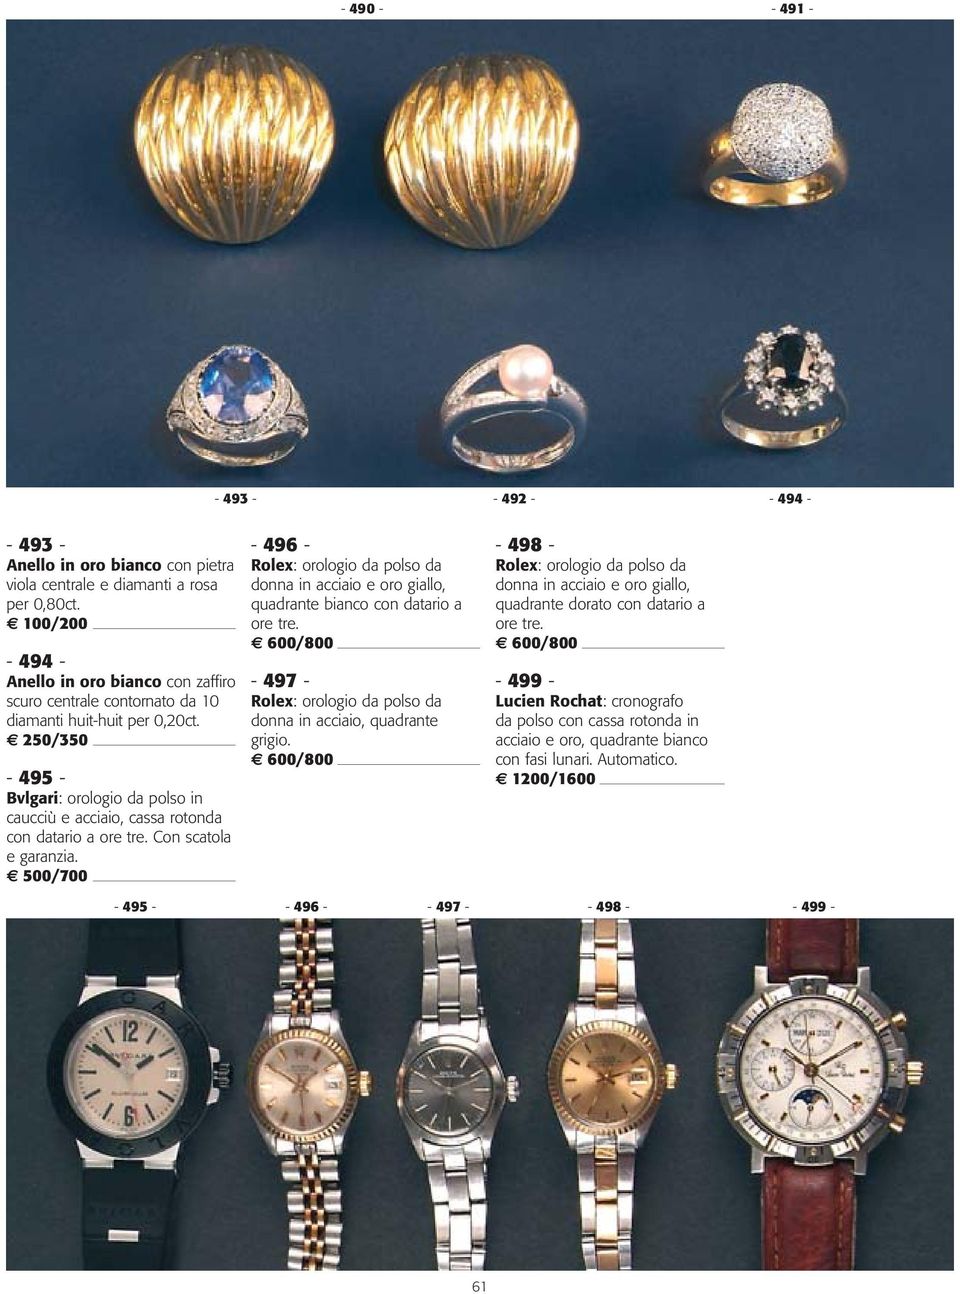 Con scatola e garanzia. 500/700-496 - Rolex: orologio da polso da donna in acciaio e oro giallo, quadrante bianco con datario a ore tre.